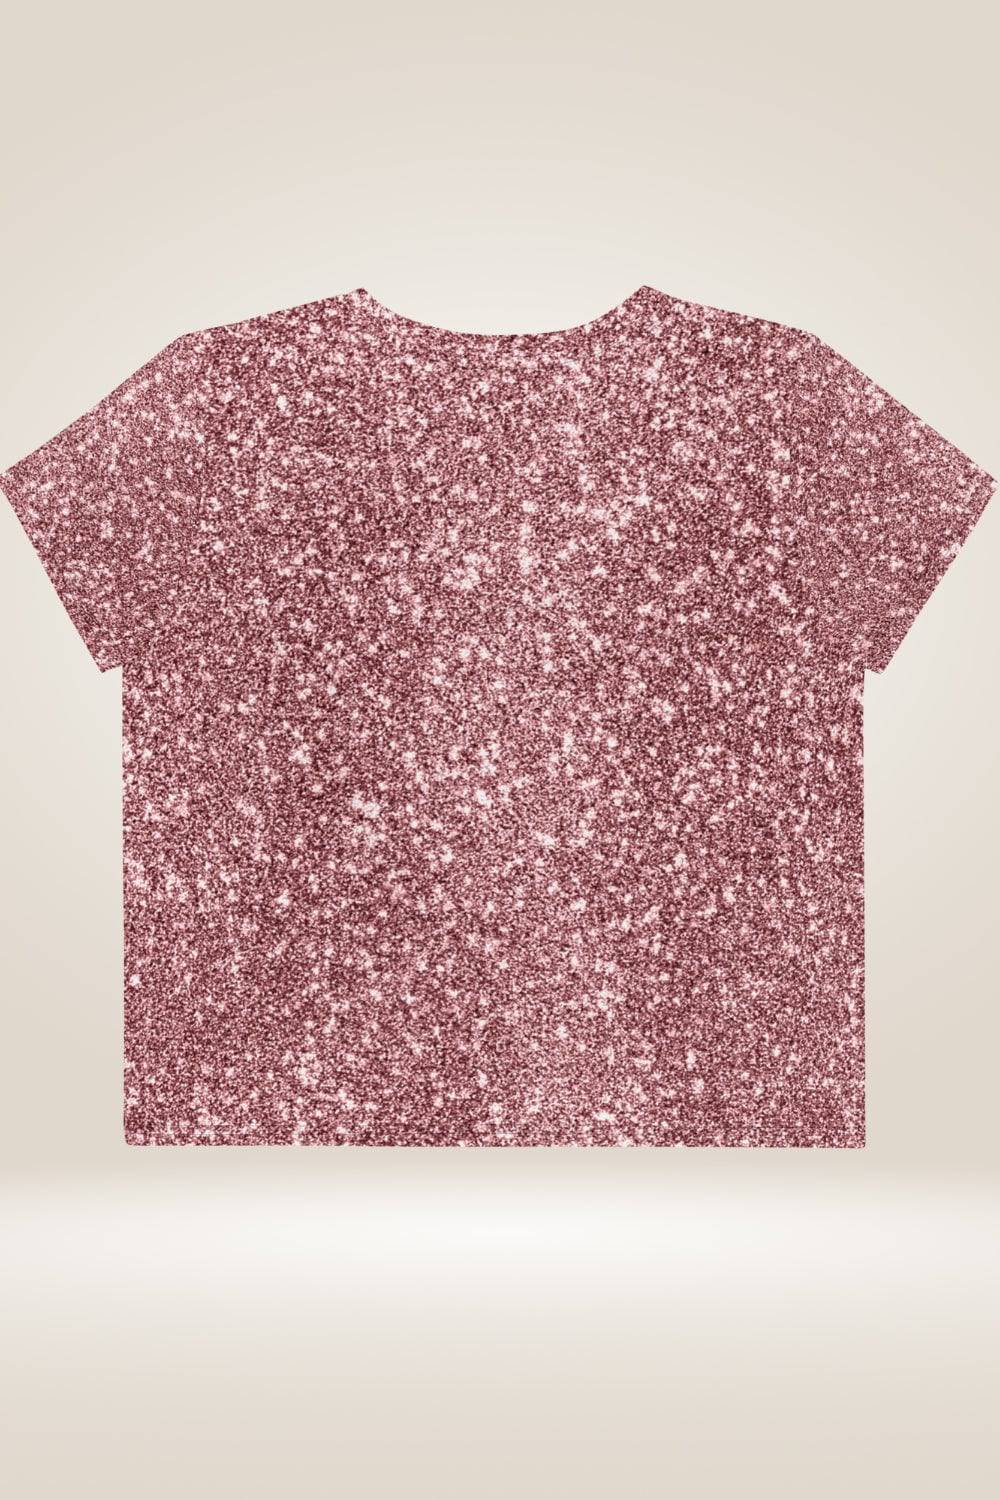 Pink Glitter Print Crop Top T Shirt - TGC Boutique - Crop Top